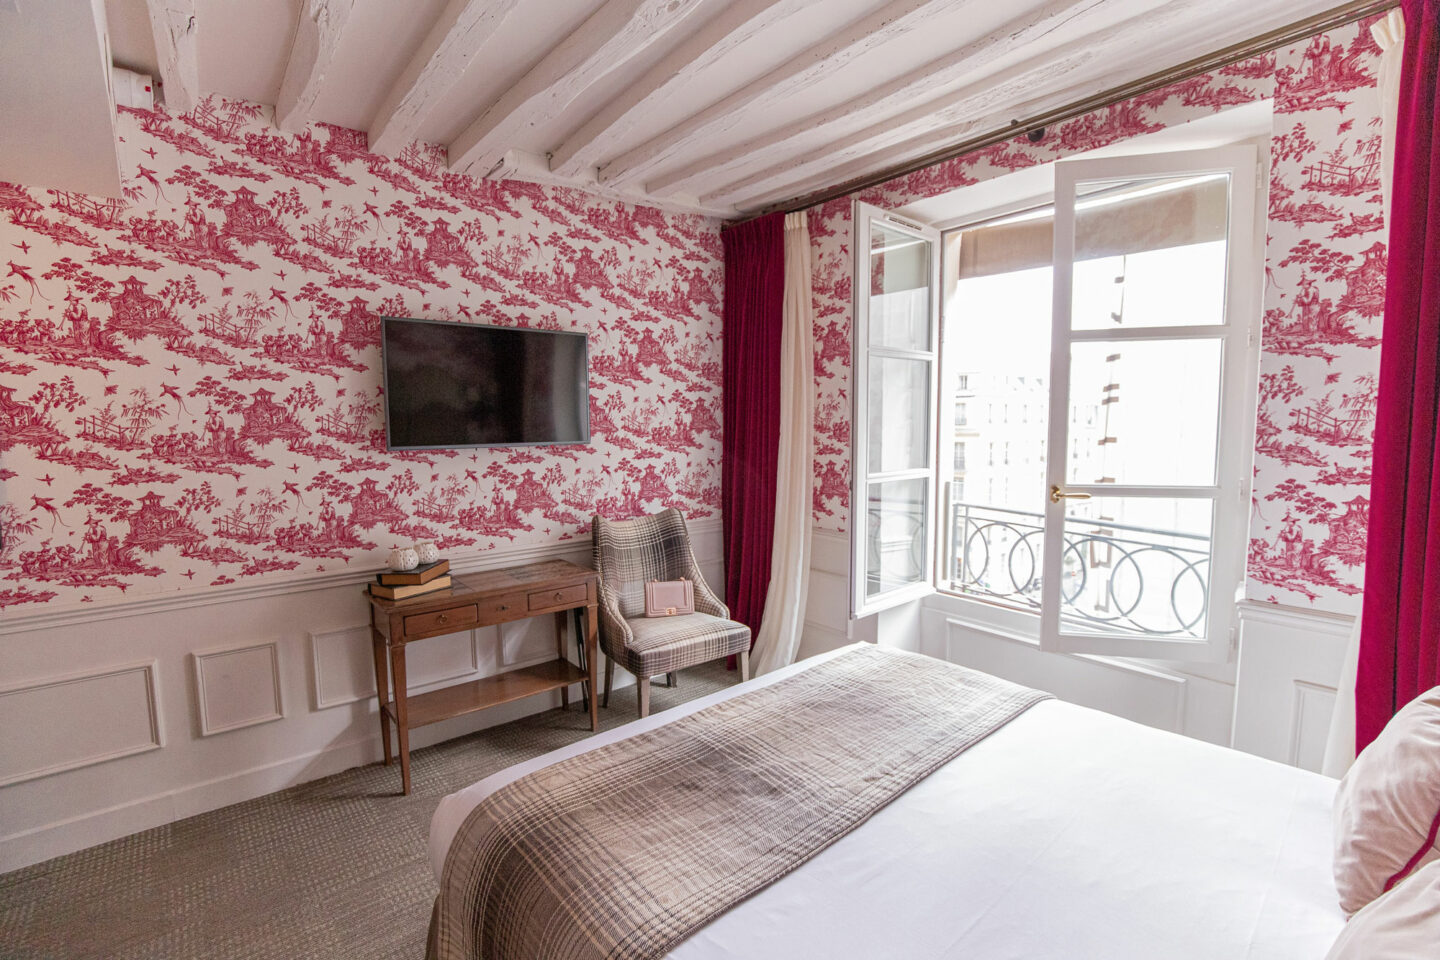 3-best-hotels-in-paris-where-to-stay-in-paris-paris-boutique-hotel-la-maison-favart-kelsey-heinrichs-kelseyinlondon